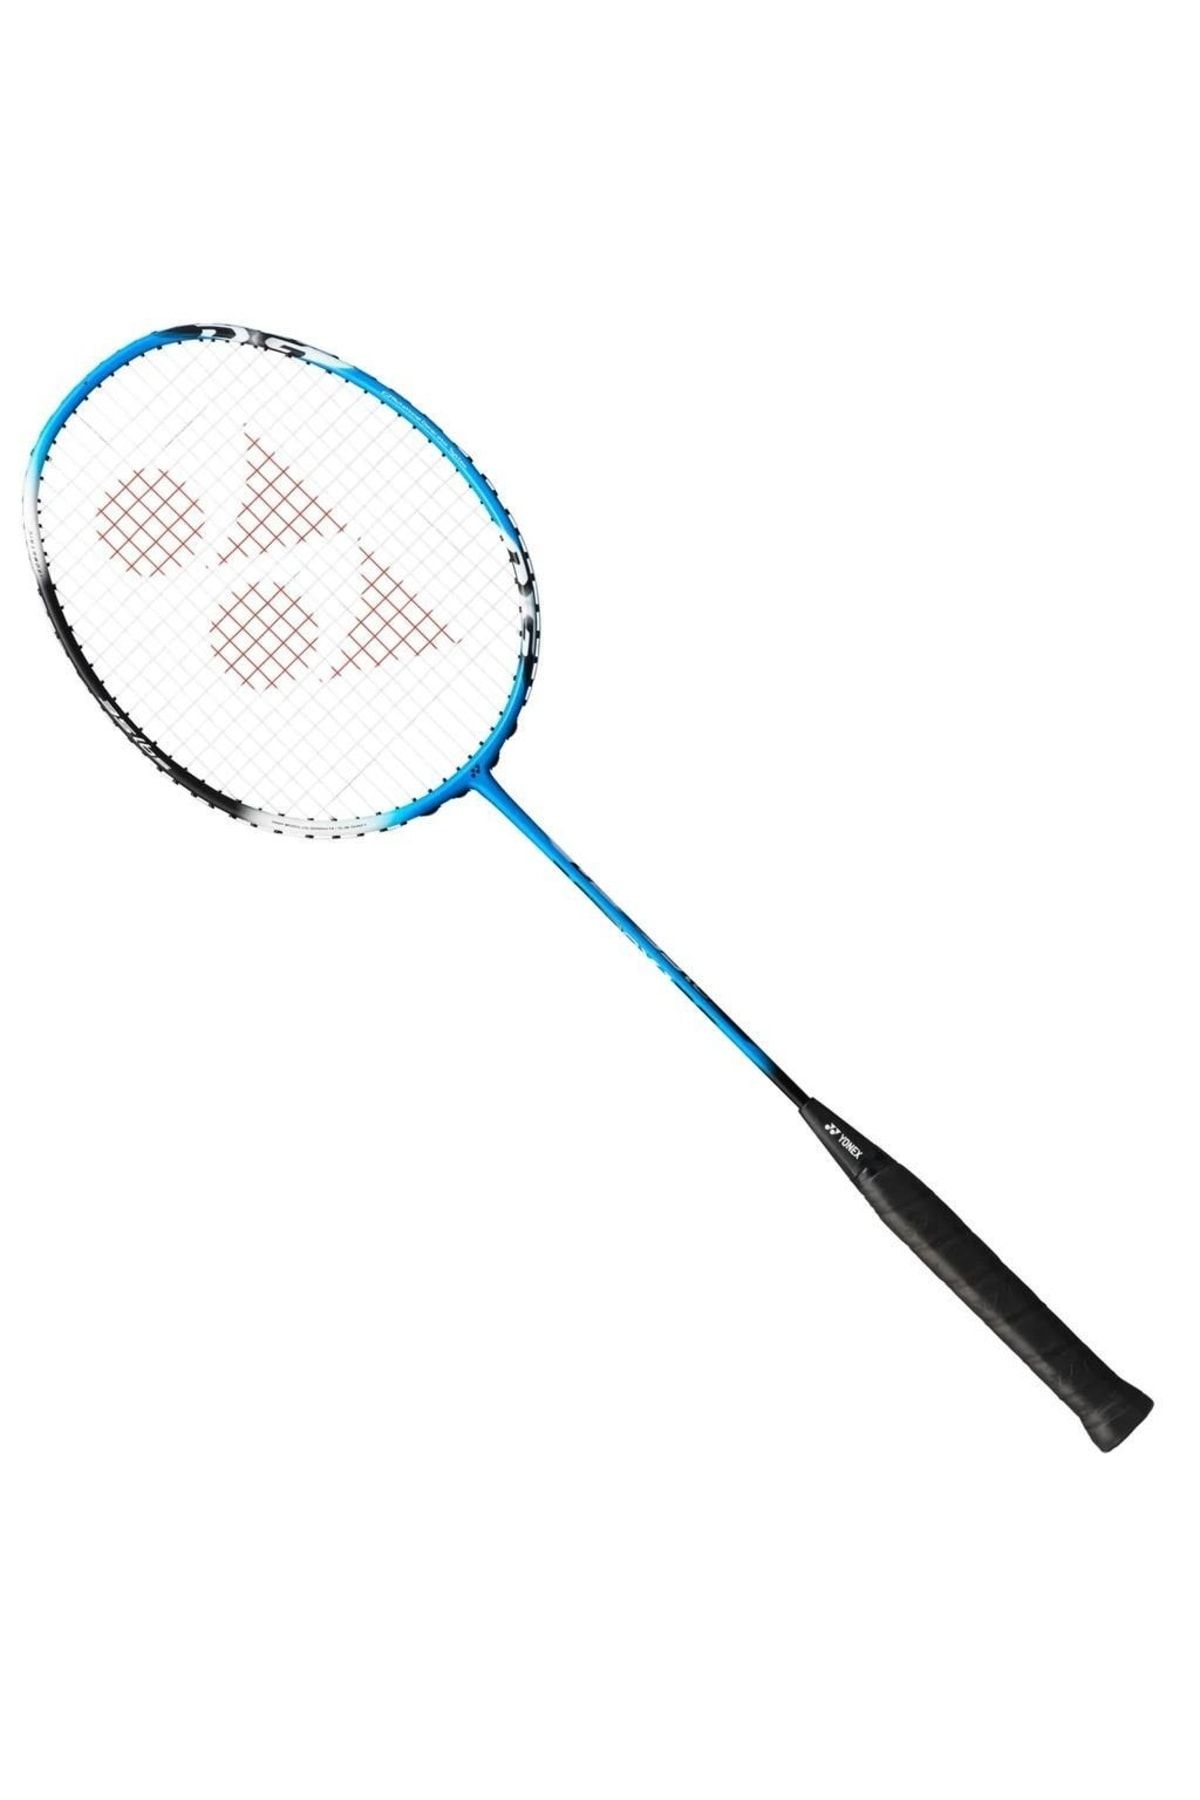 Yonex Yy22 Astrox 1-dg Siyah Mavi Badminton Raketi